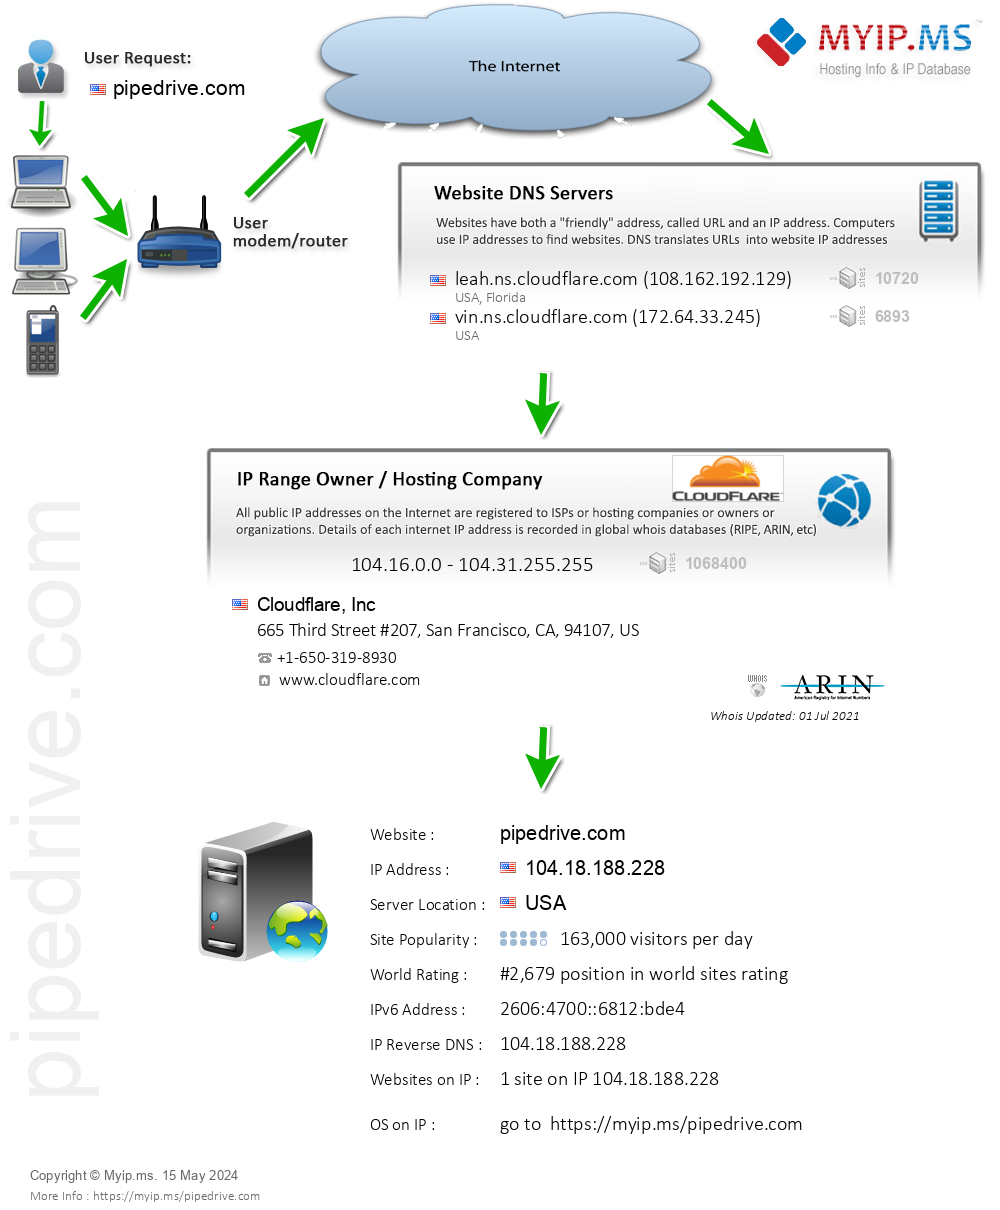 Pipedrive.com - Website Hosting Visual IP Diagram